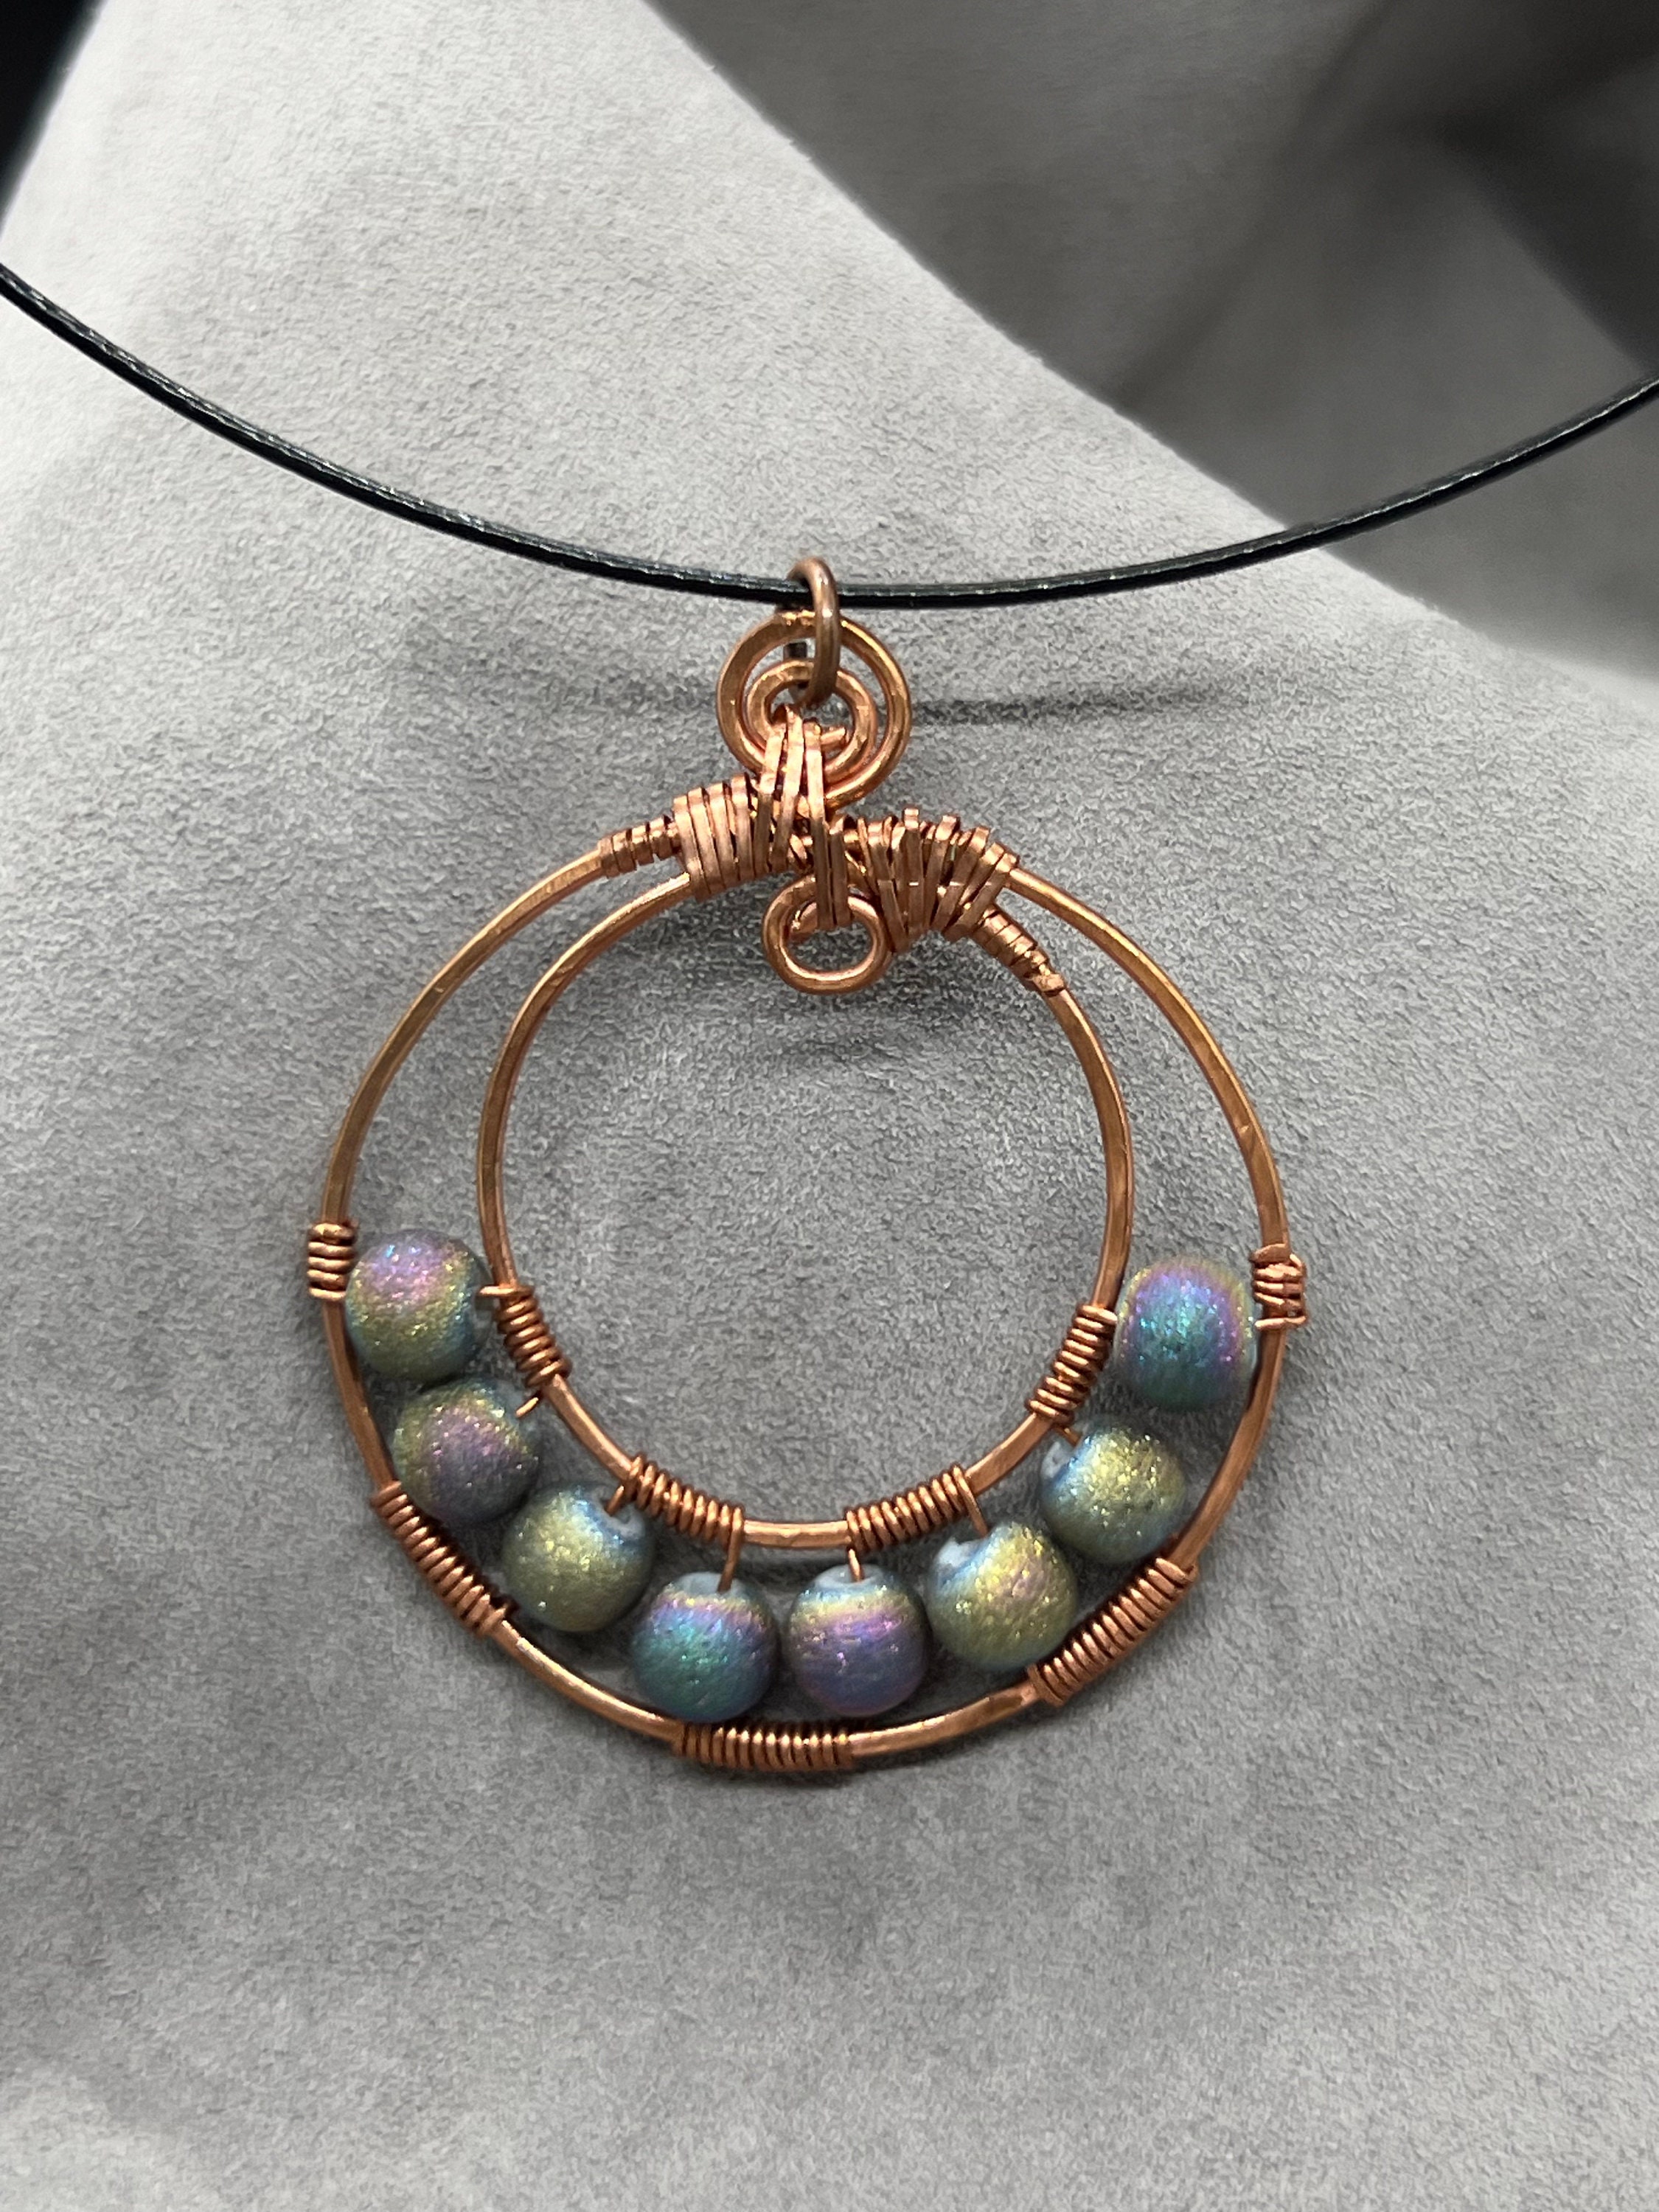 aqua blue earrings wire wrapped jewelry copper earrings blue